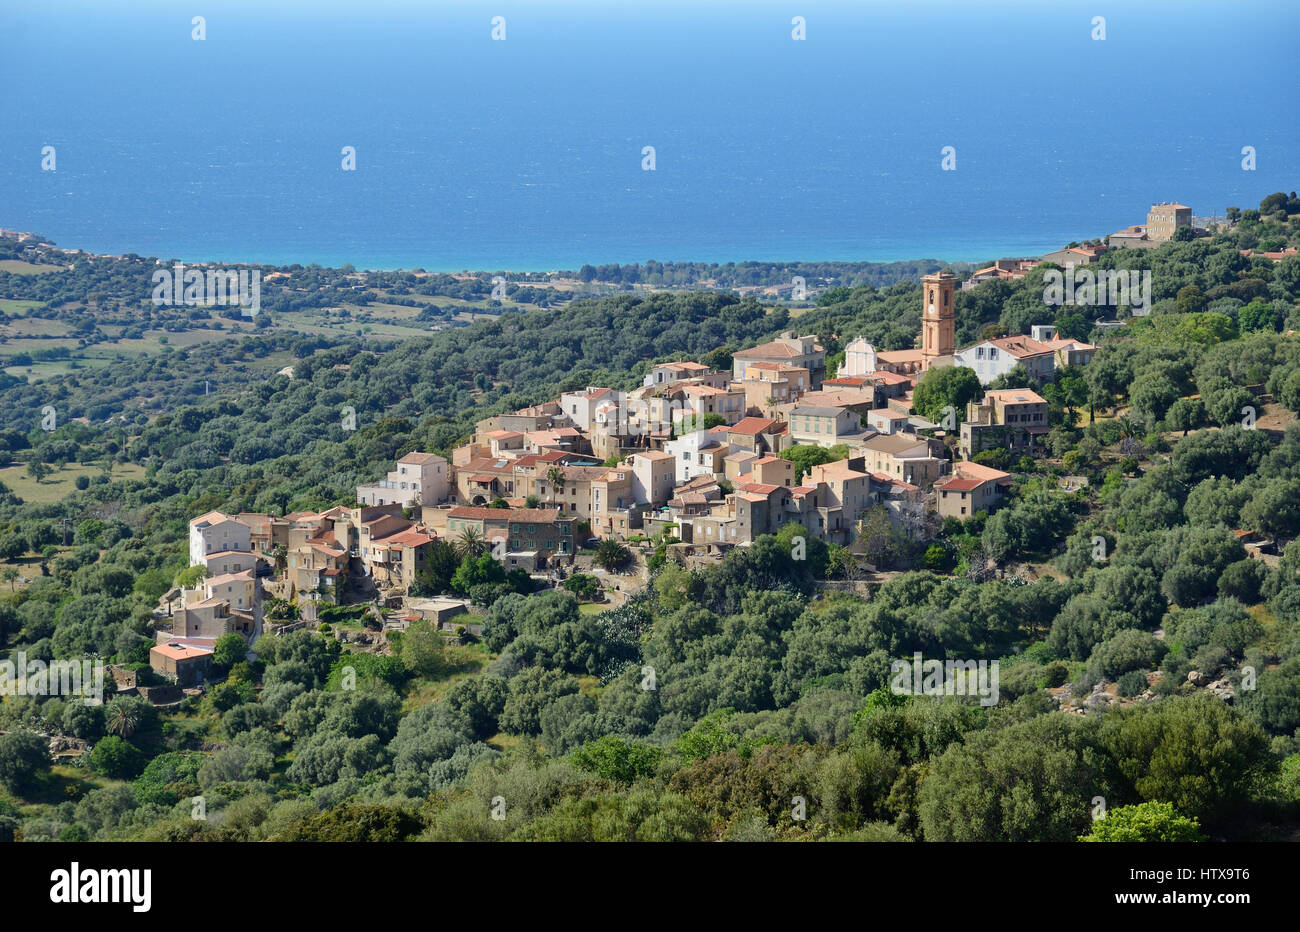 El pueblo de la colina está situado por encima de la llanura costera de la región de Balagne. Foto de stock